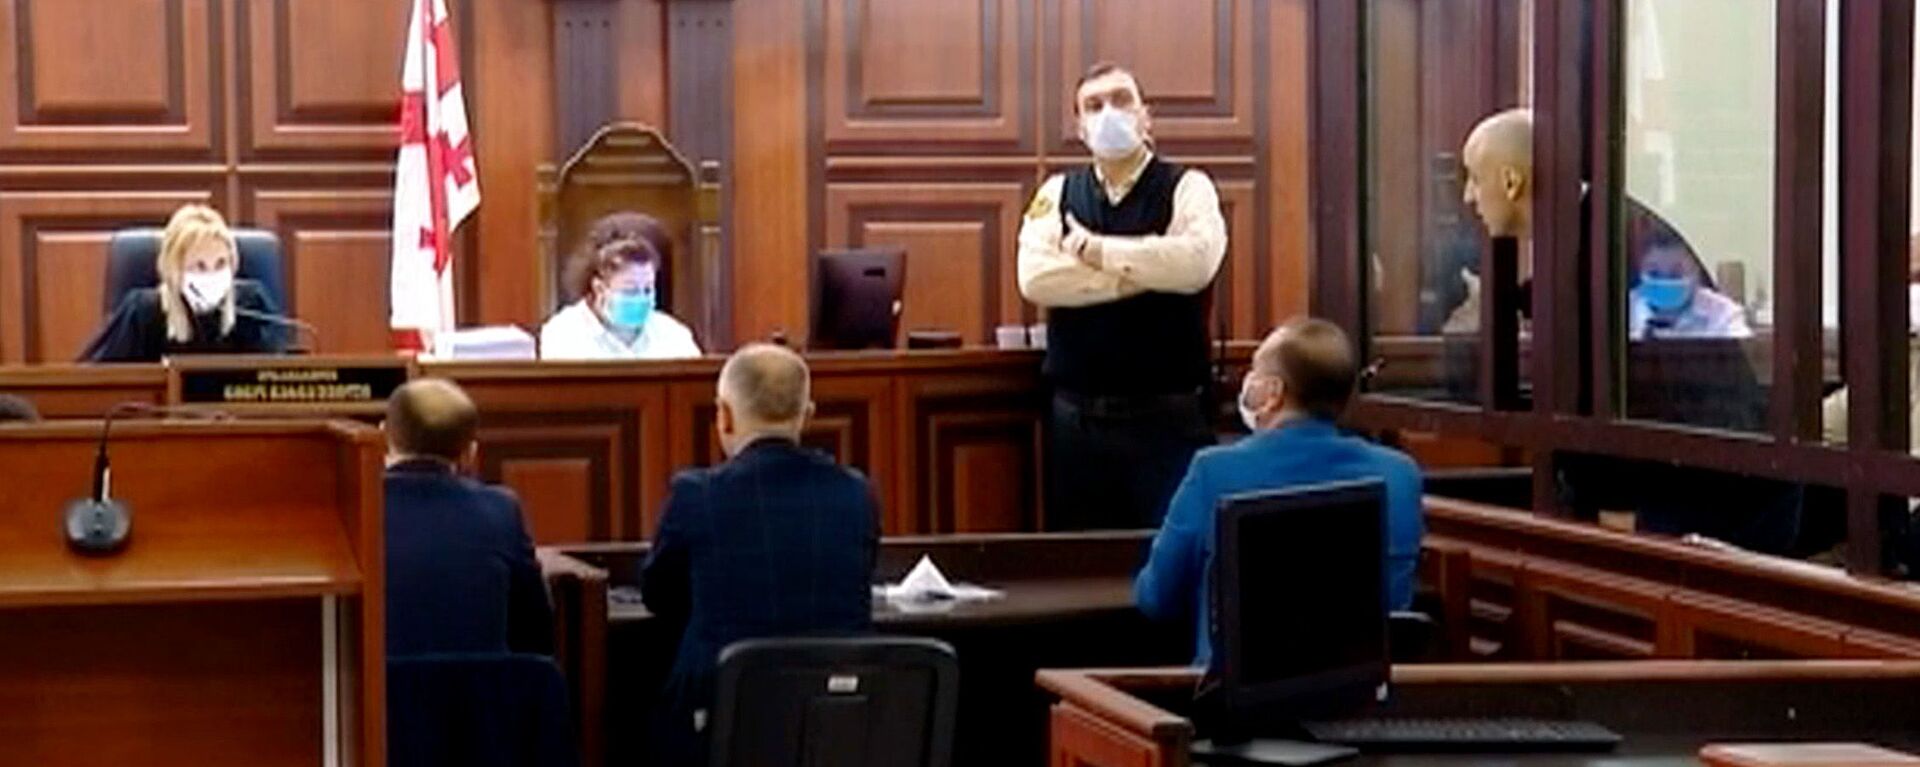 Ника Мелия на судебном процессе в Тбилисском городском суде 13 апреля 2021 года - Sputnik Грузия, 1920, 09.09.2021